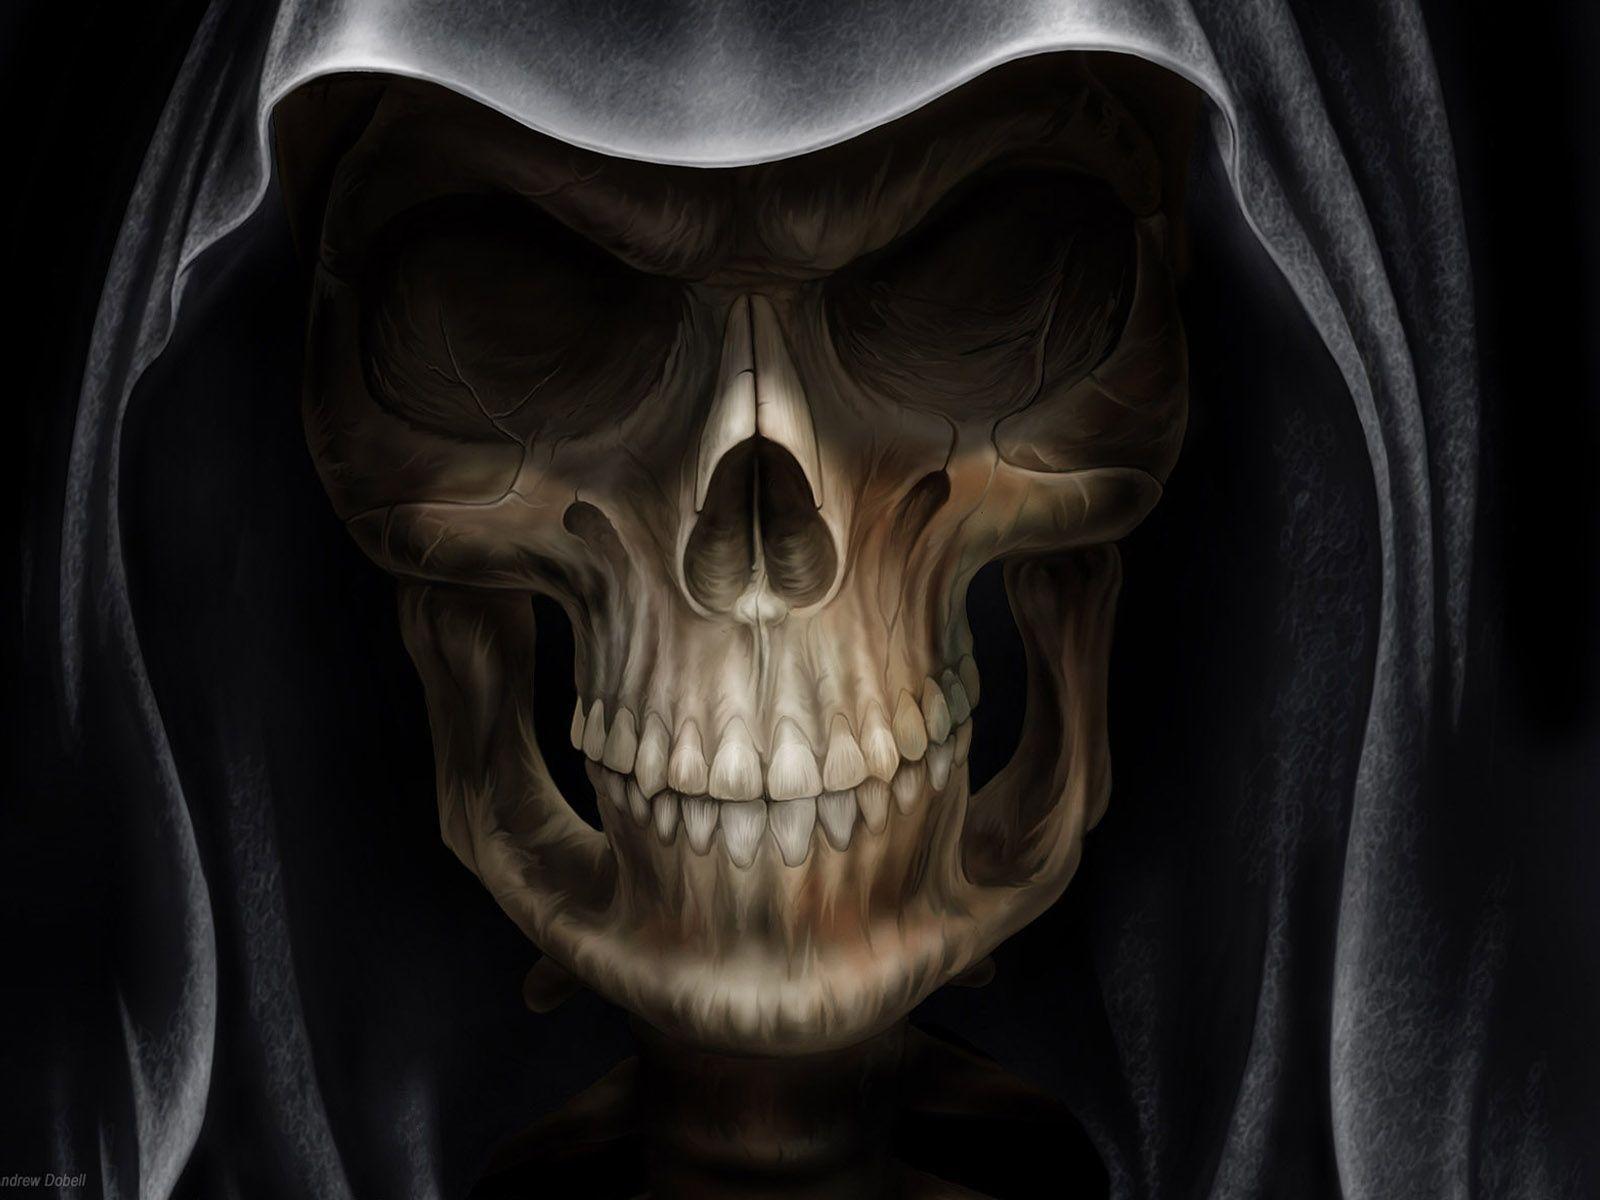 Skull Wallpaper HD 1280x1024PX 3D Skull Wallpaper #